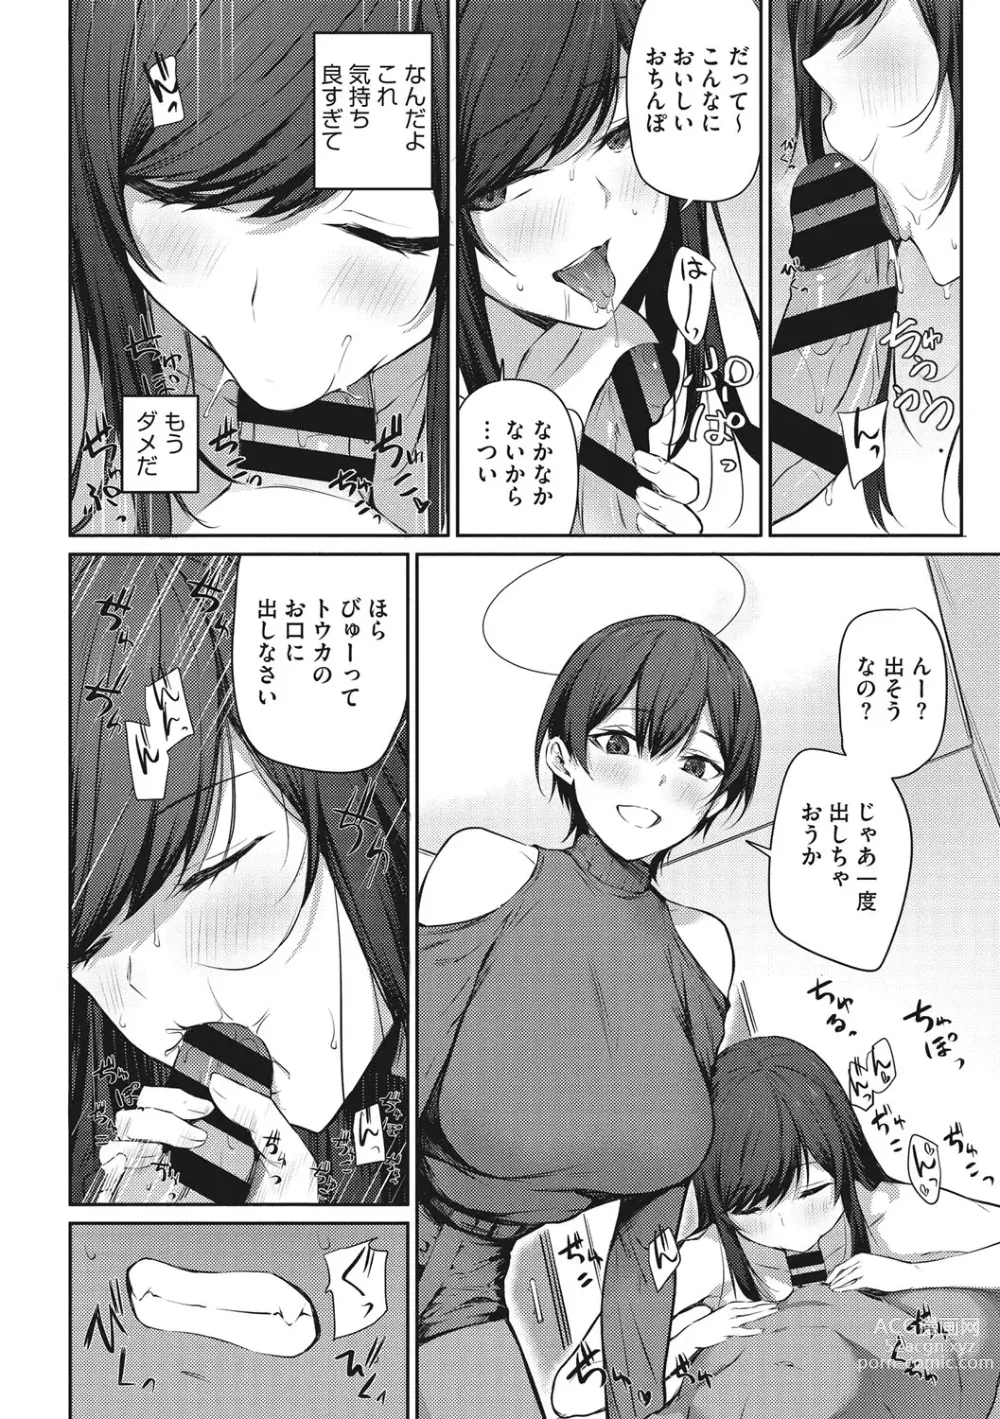 Page 11 of manga Karada Awase